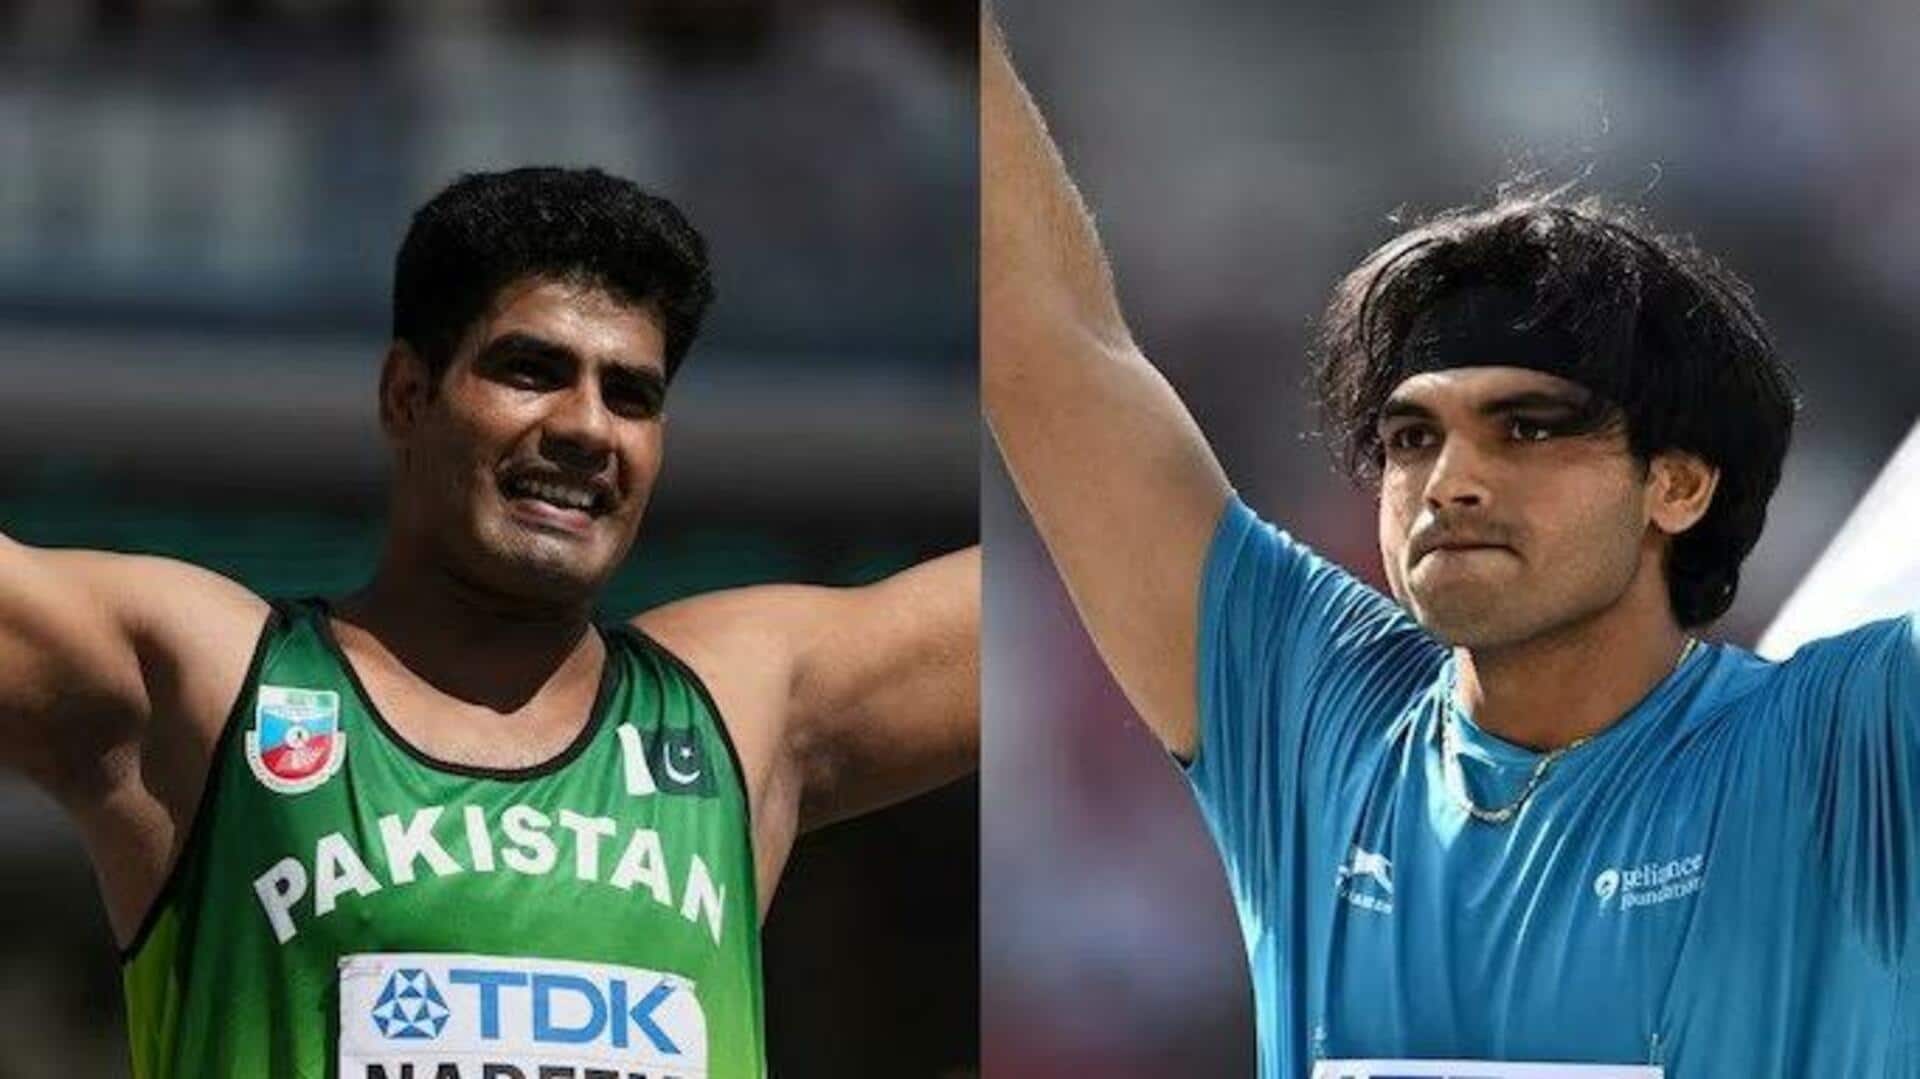 உலக சாம்பியன்ஷிப் ஈட்டி எறிதல் இறுதிப்போட்டியில் இந்தியா-பாகிஸ்தான் இடையே கடும் போட்டி